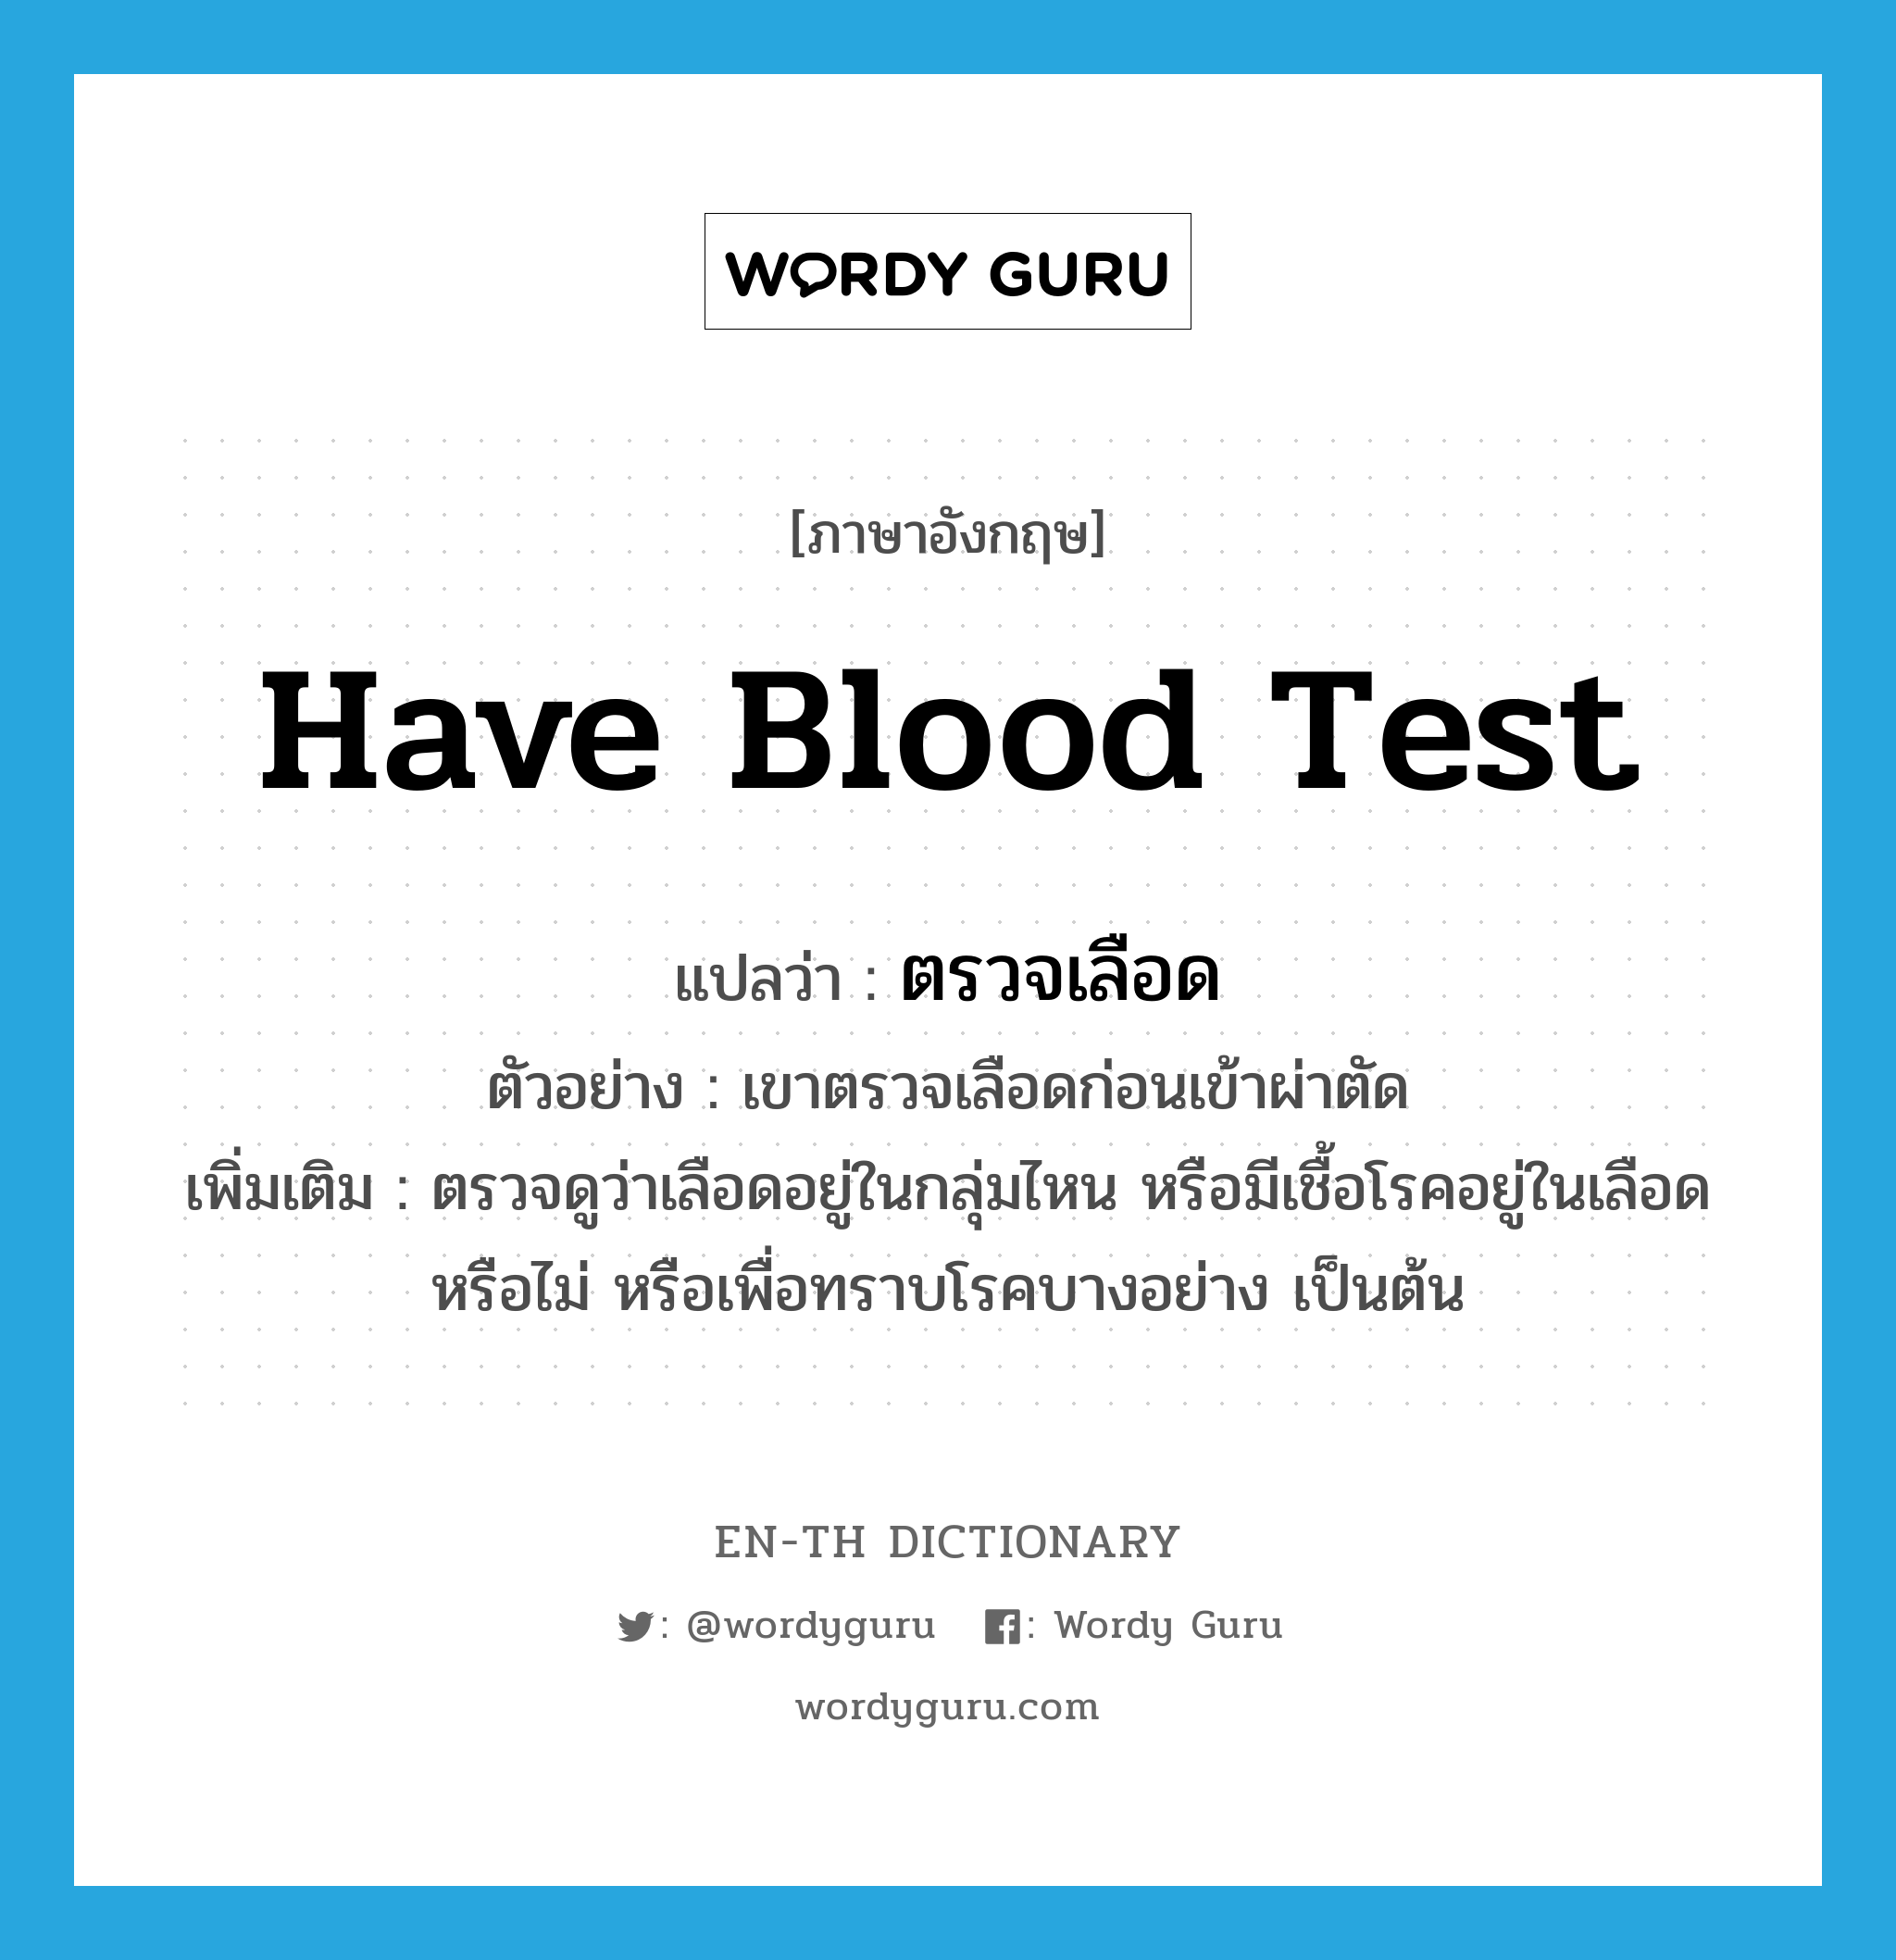 ตรวจเลือด ภาษาอังกฤษ?, คำศัพท์ภาษาอังกฤษ ตรวจเลือด แปลว่า have blood test ประเภท V ตัวอย่าง เขาตรวจเลือดก่อนเข้าผ่าตัด เพิ่มเติม ตรวจดูว่าเลือดอยู่ในกลุ่มไหน หรือมีเชื้อโรคอยู่ในเลือดหรือไม่ หรือเพื่อทราบโรคบางอย่าง เป็นต้น หมวด V